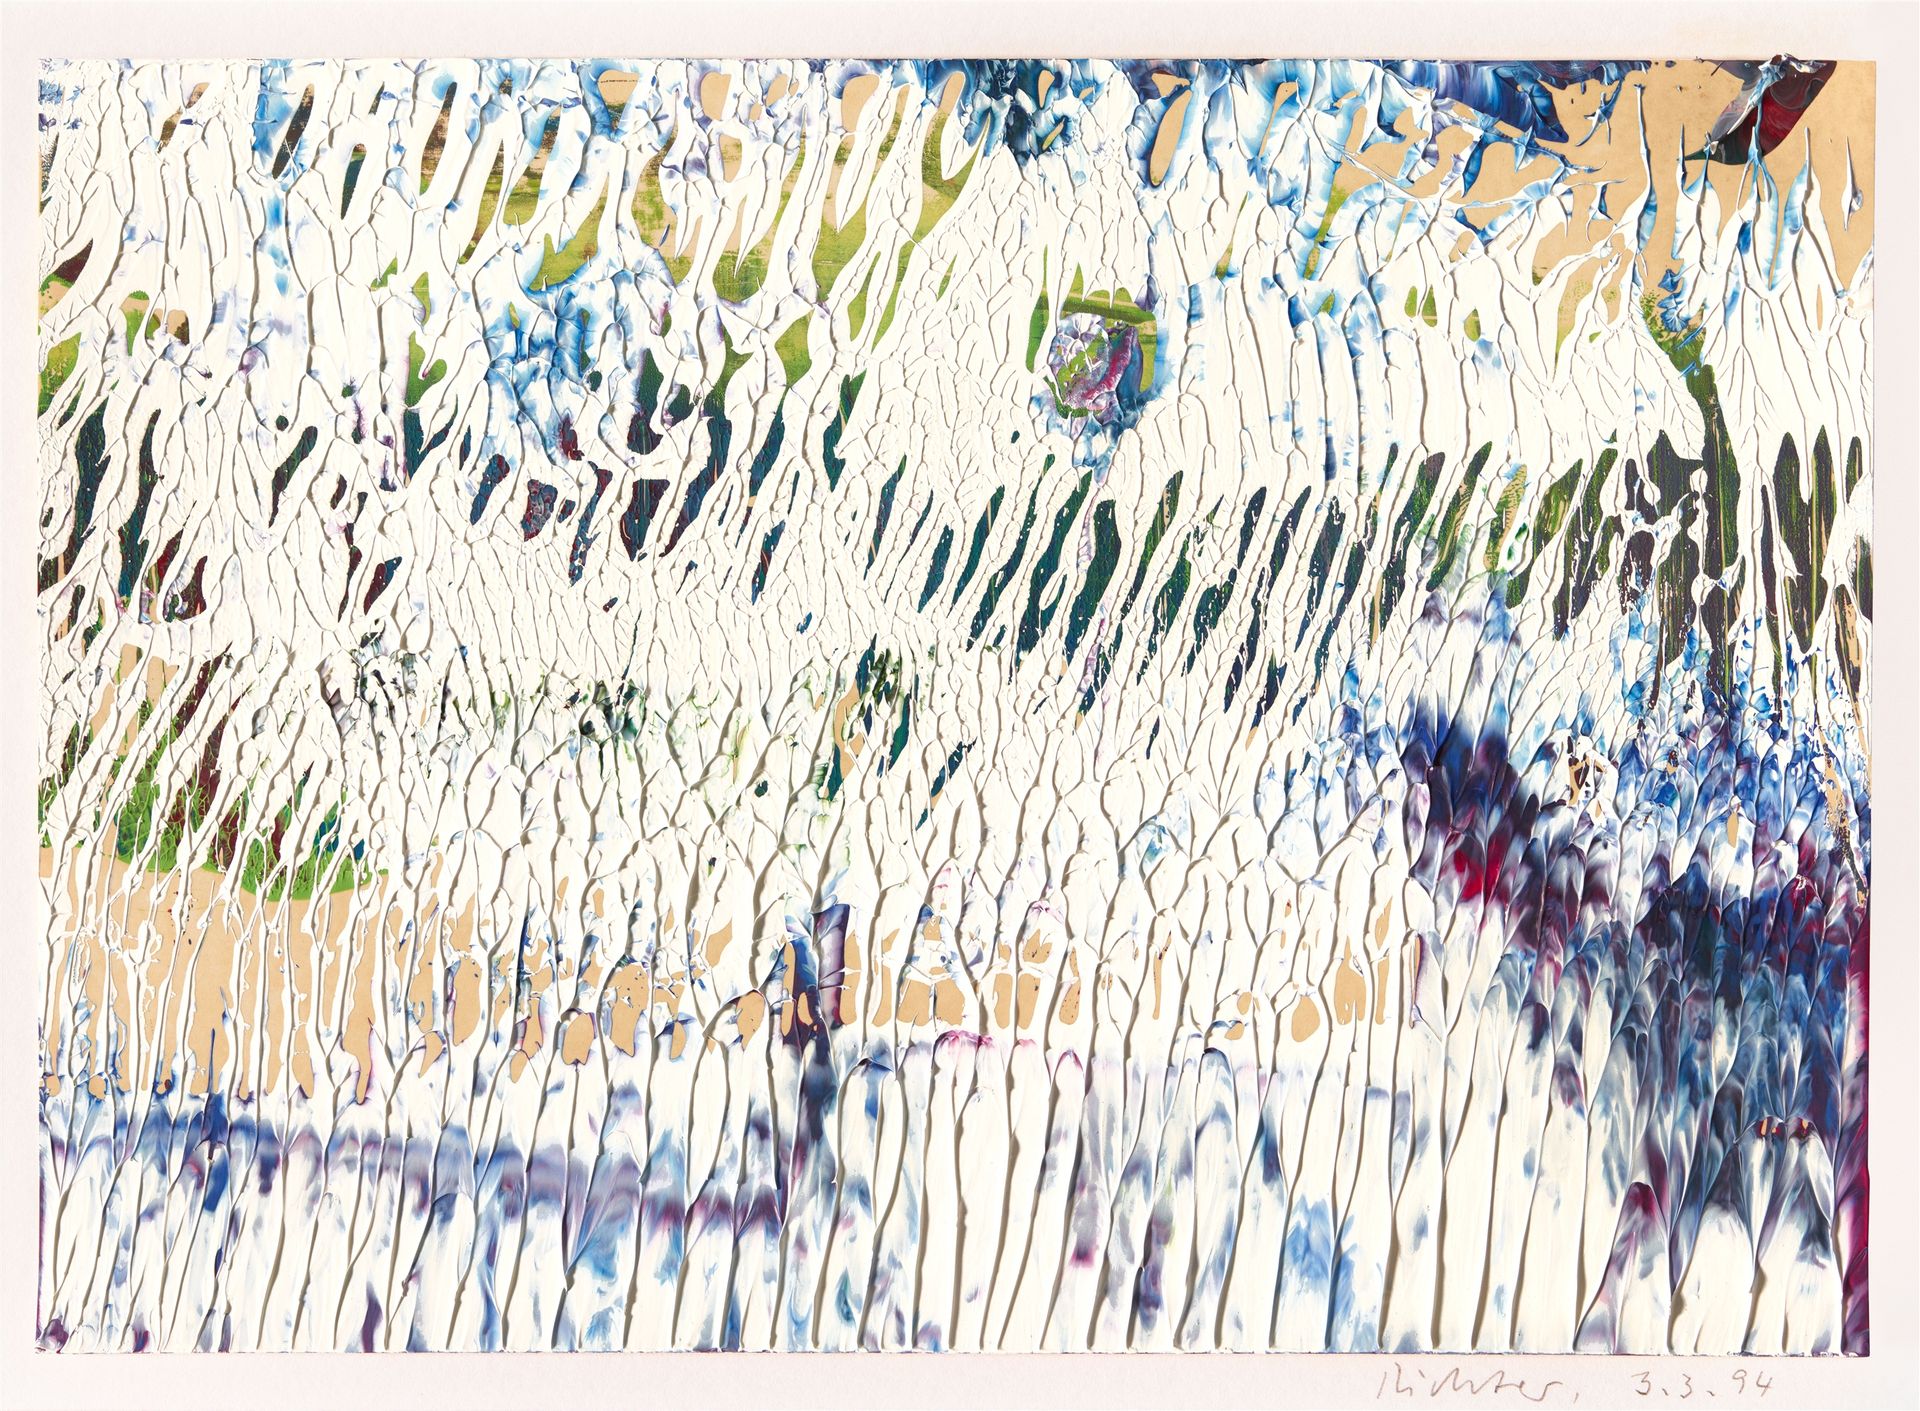 Gerhard Richter Gerhard Richter



3.3.94

1994



Olio su cartone 21 x 29,8 cm.&hellip;